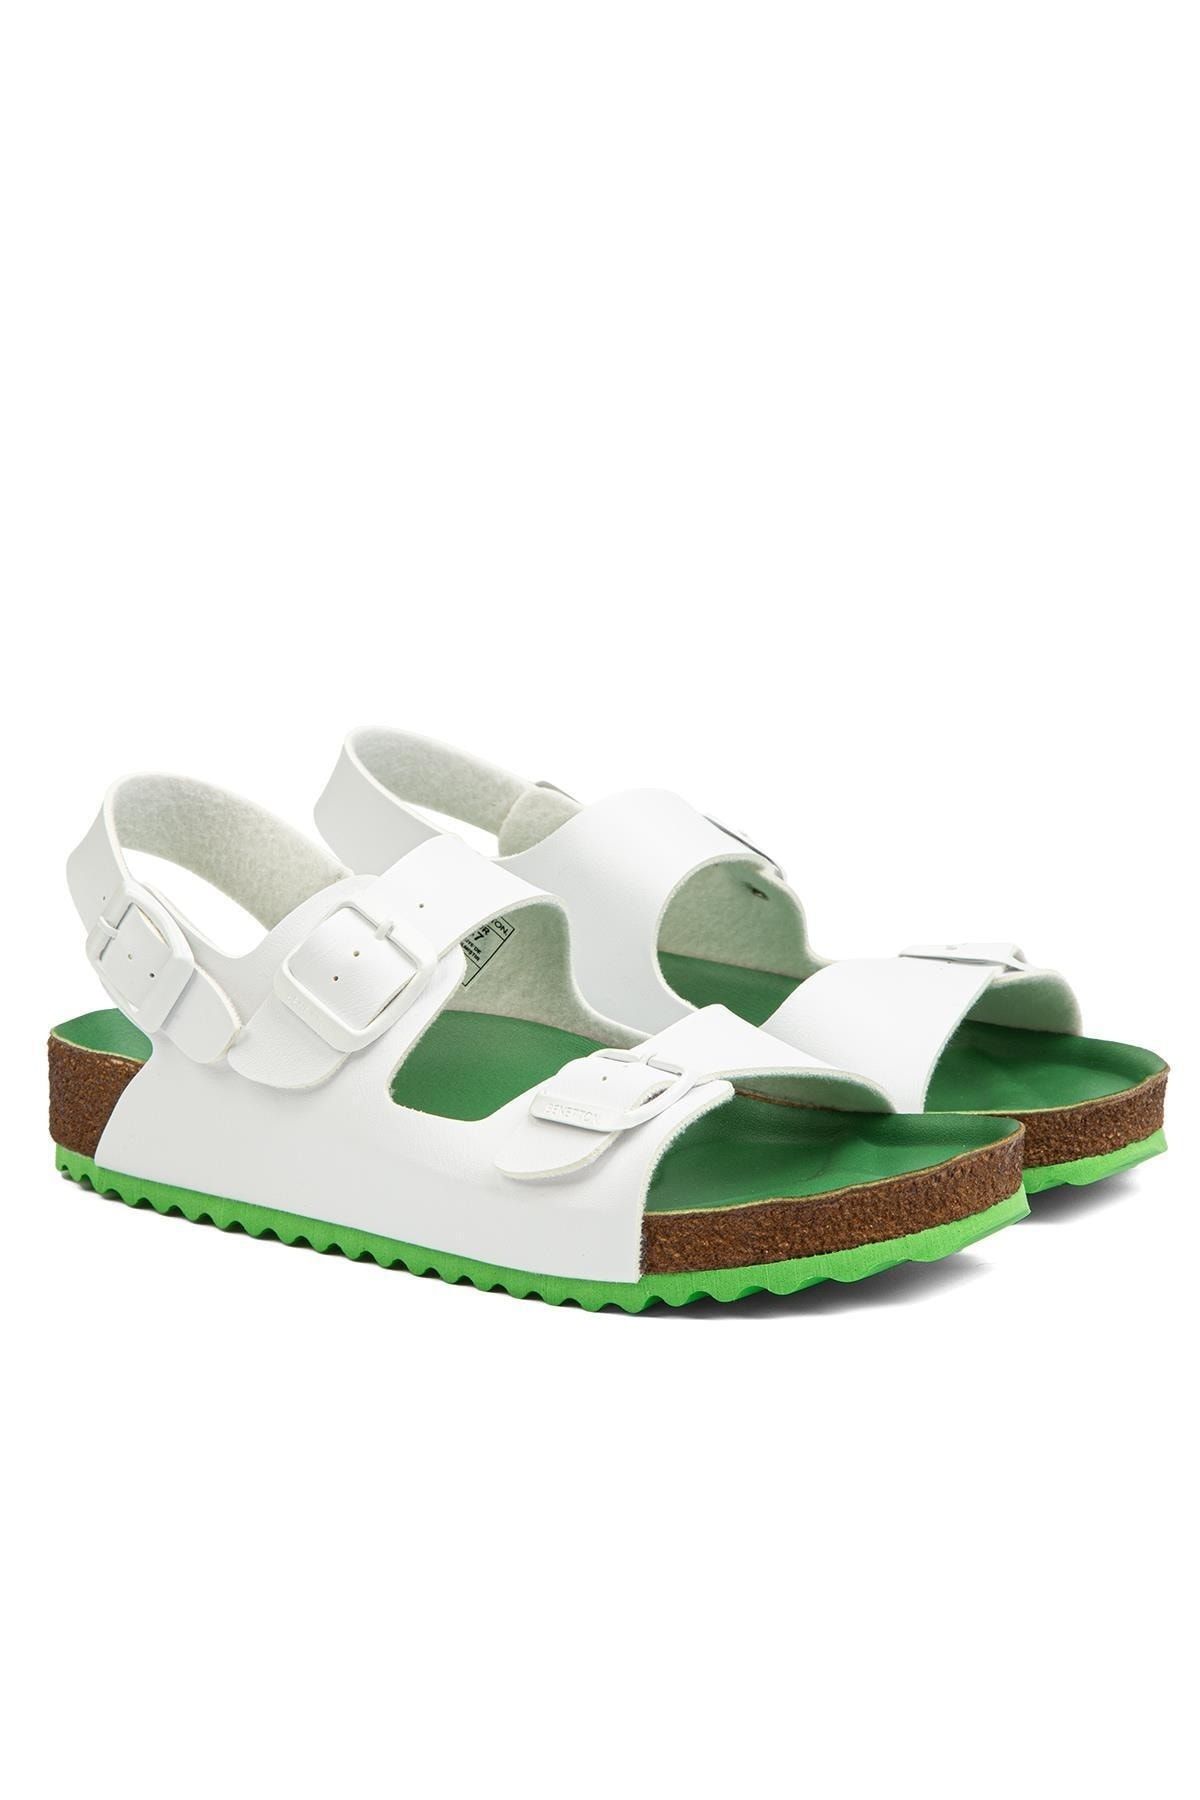 Benetton ® | BN-1222- Beyaz Yesil - Kadın Sandalet